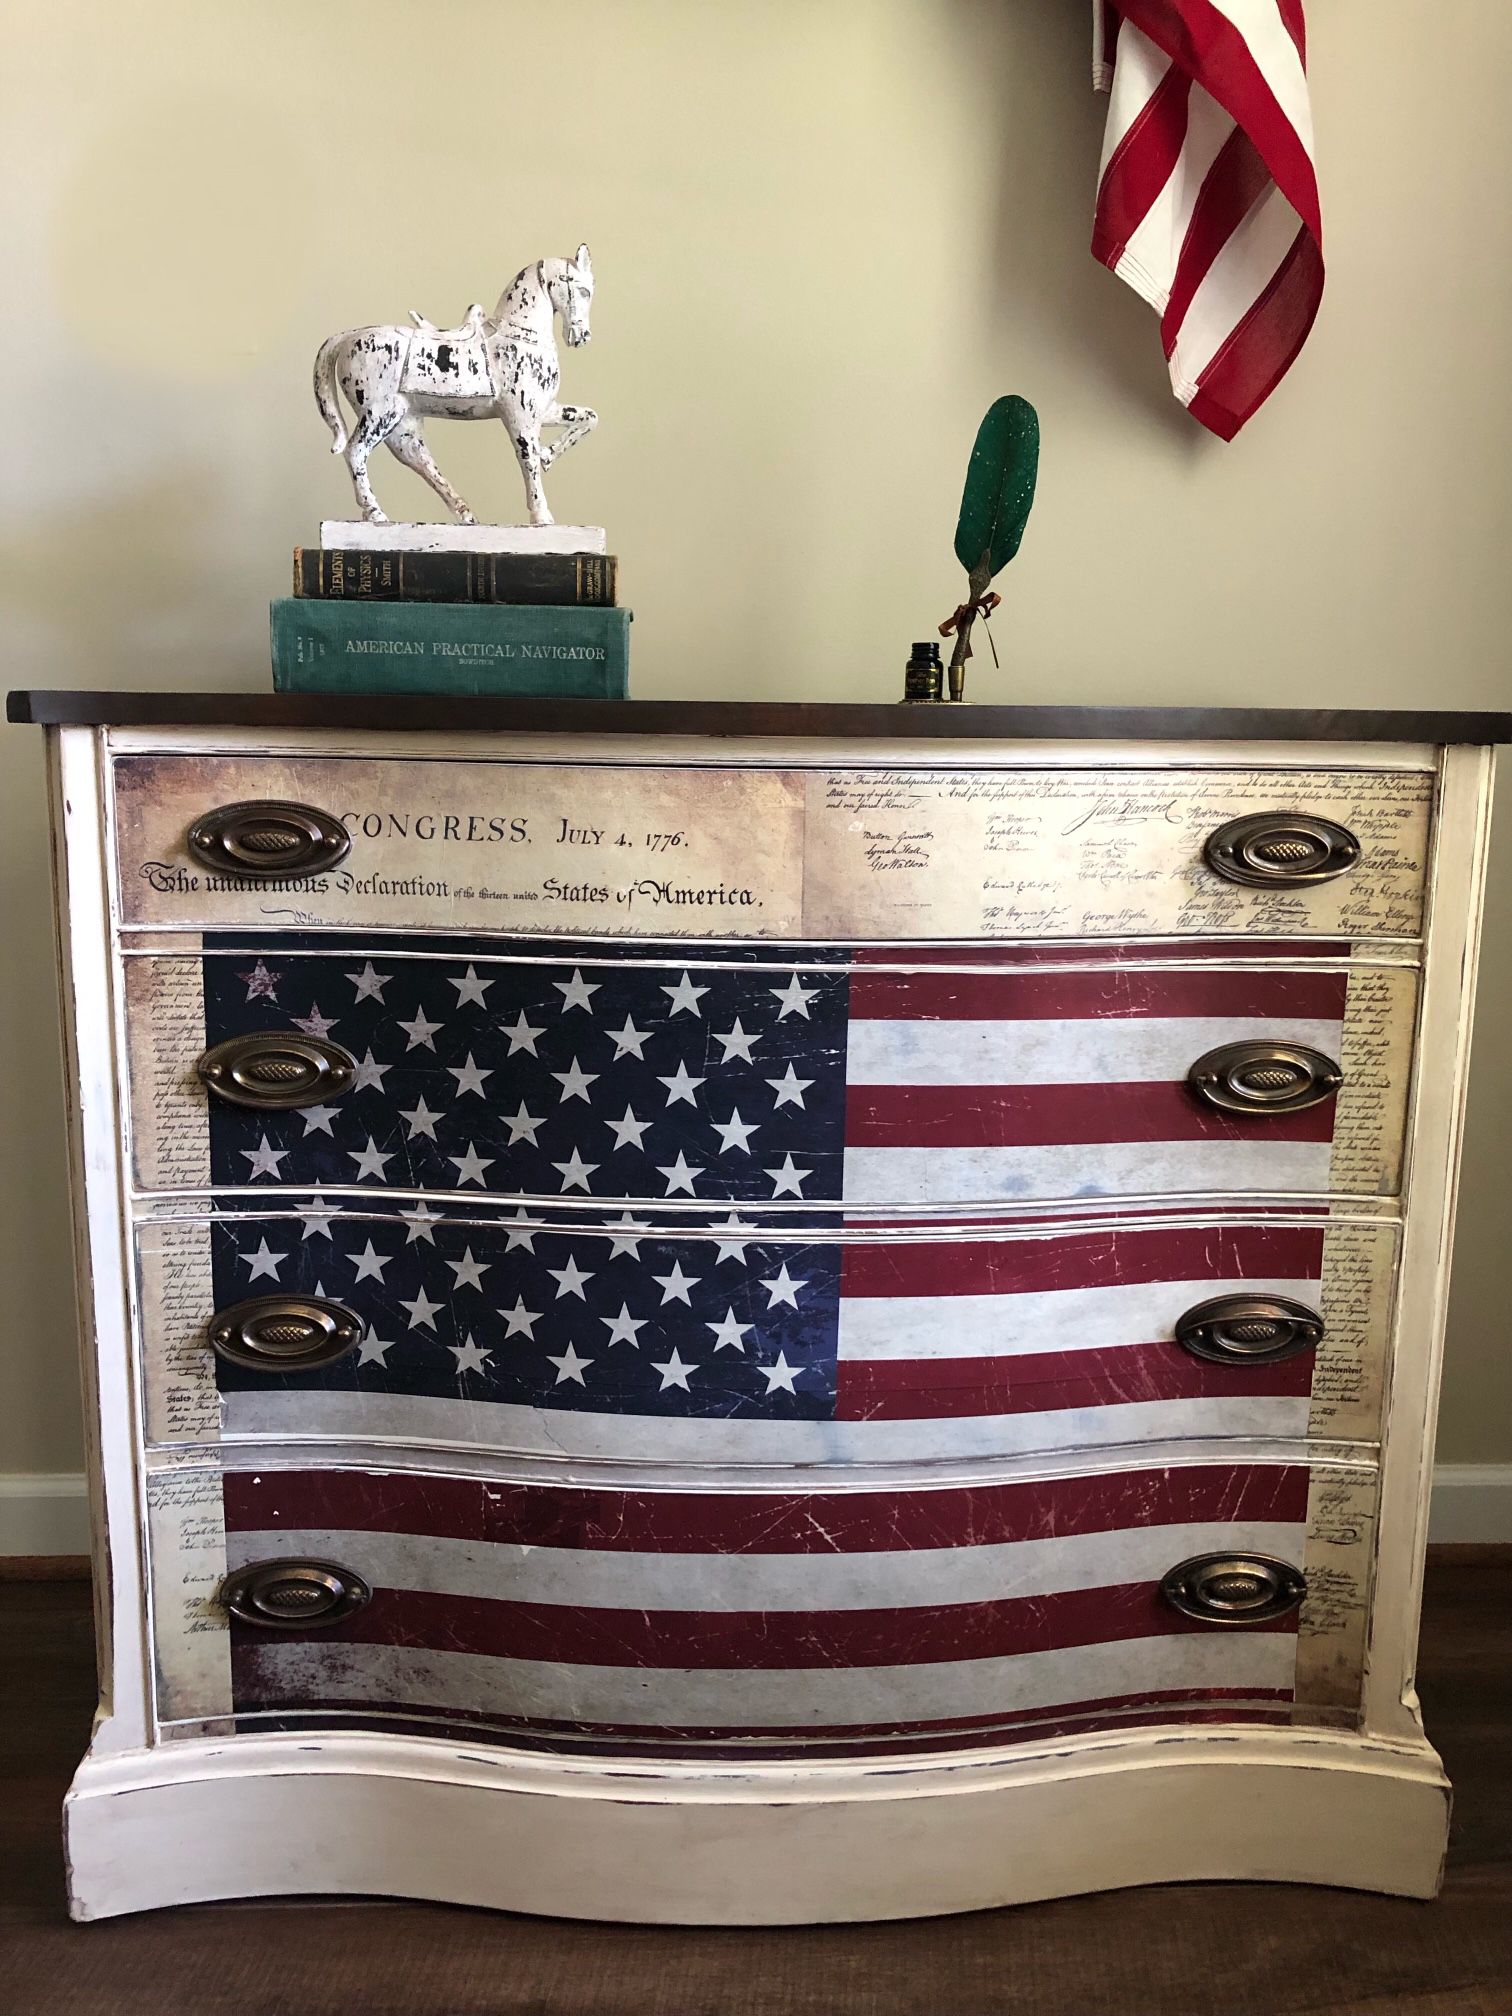 Antique/vintage Dresser